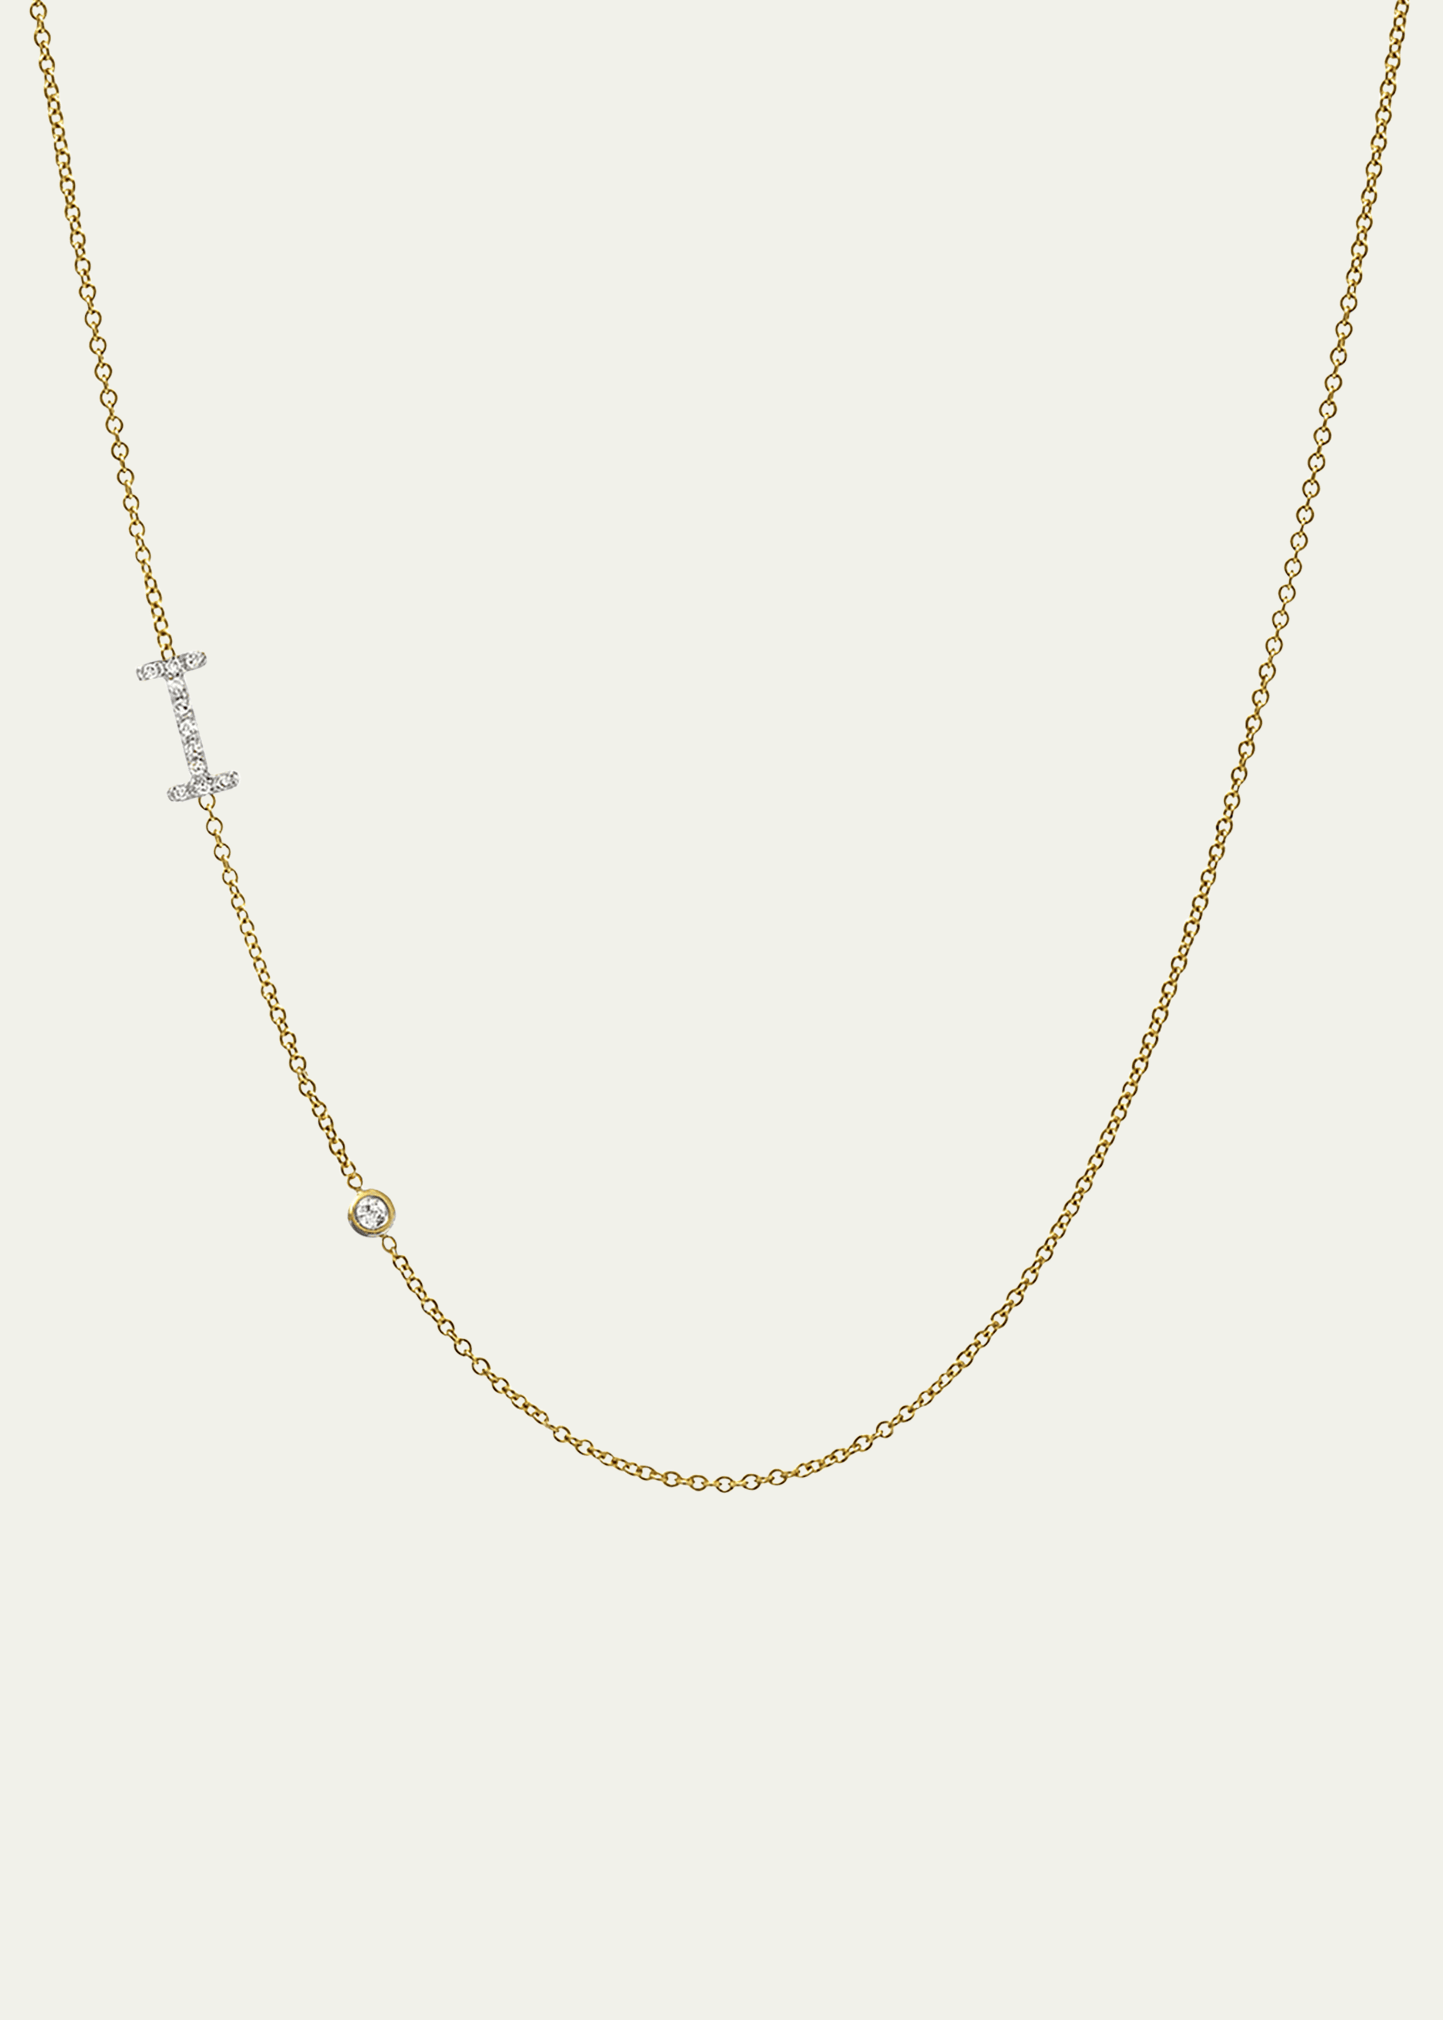 Zoe Lev Jewelry 14k Yellow Gold Diamond Initial I Necklace